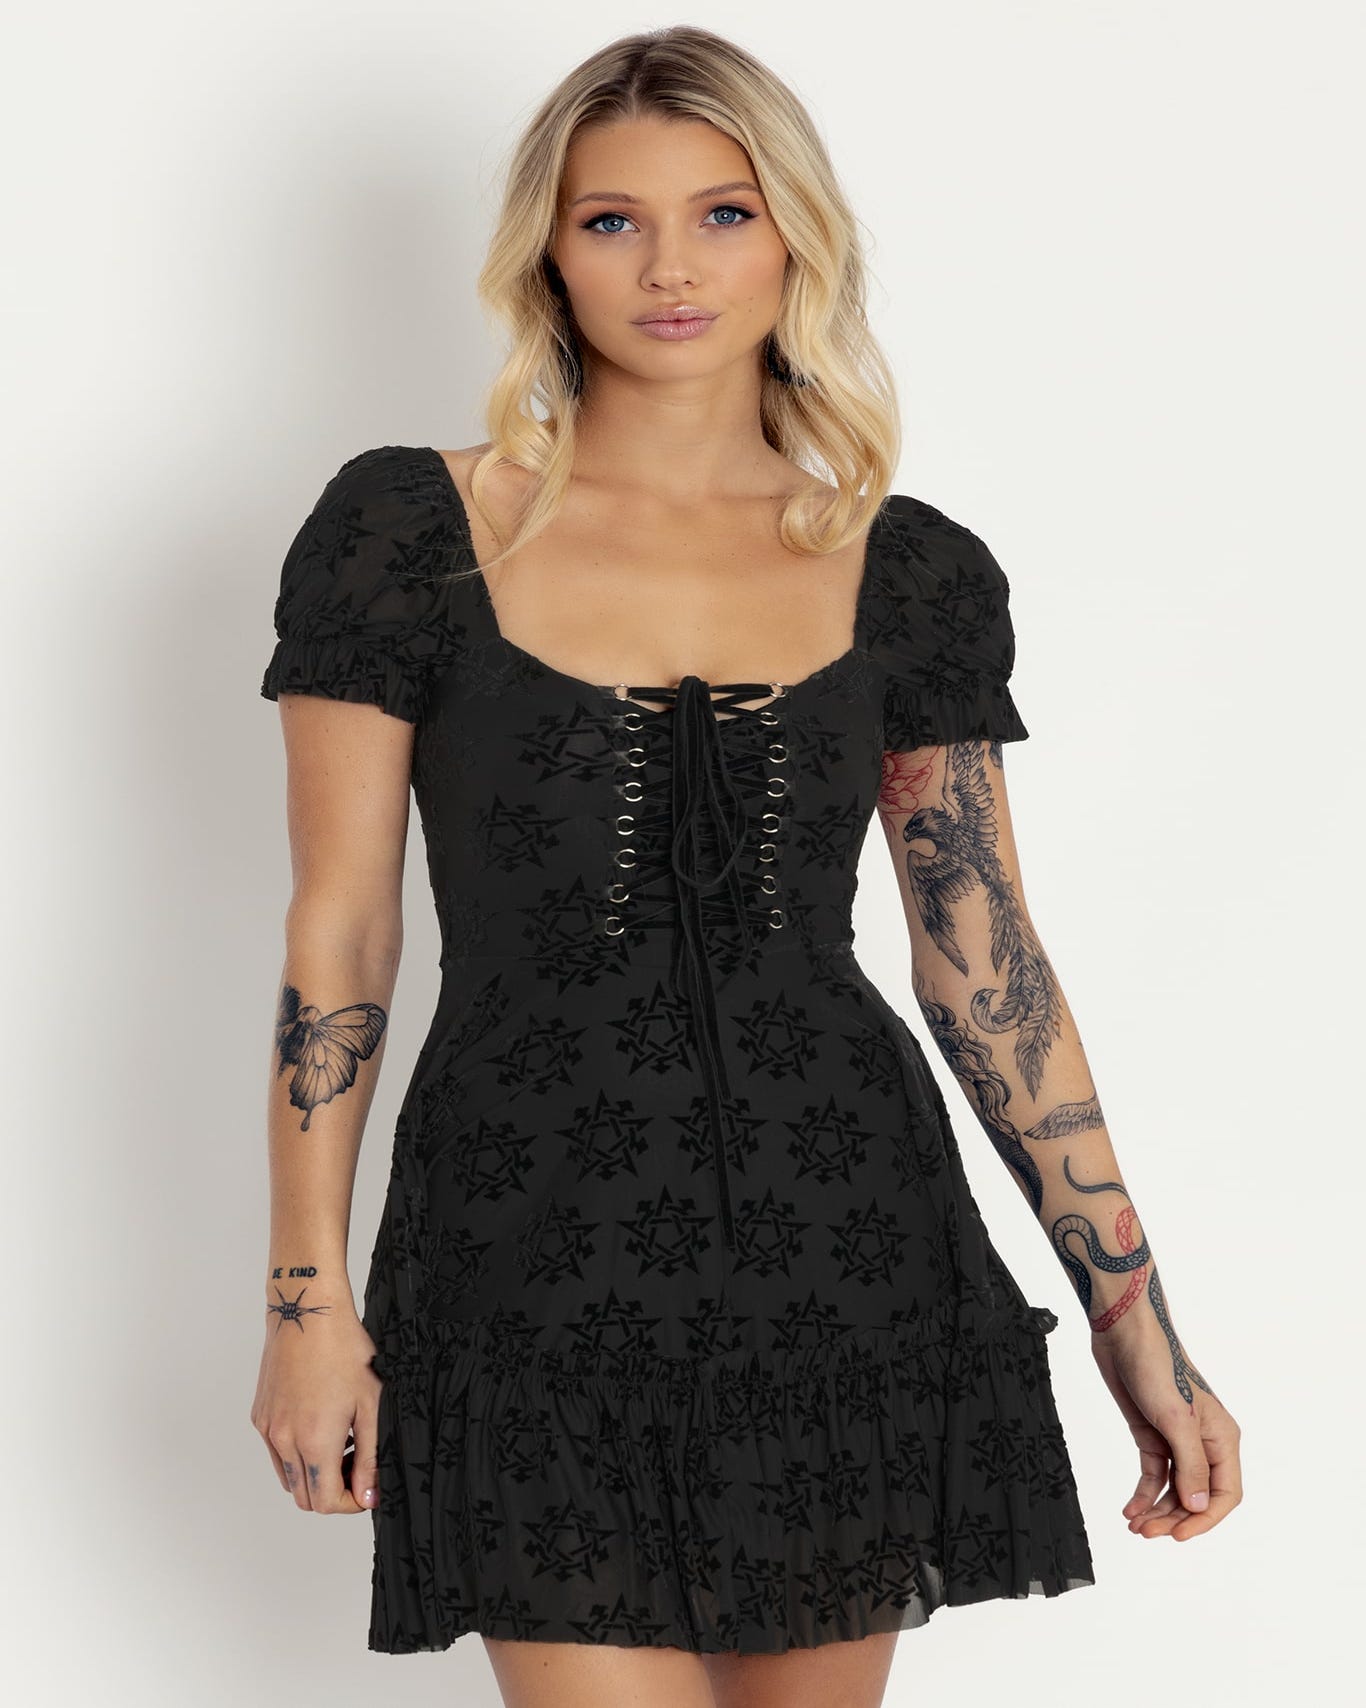 Burned Velvet Pentagram Corseted Dress - Limited